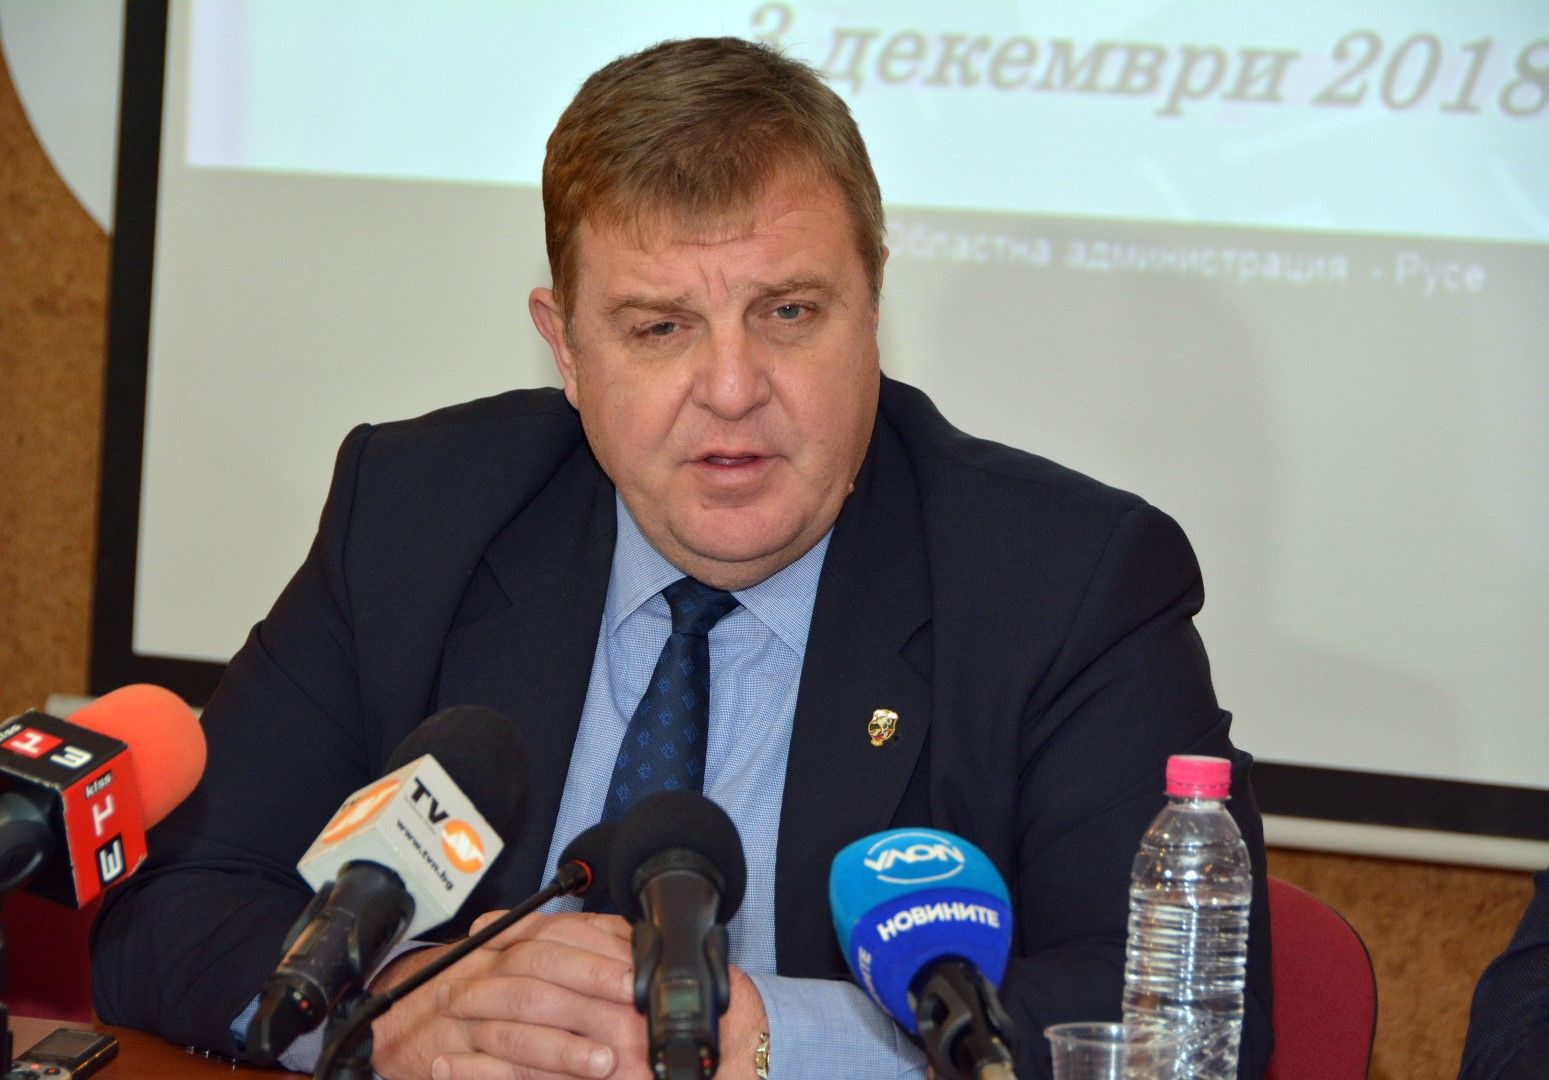 Към настоящия момент "ТЕРЕМ - КРЗ Флотски арсенал - Варна" ЕООД развива своята дейност основно на гражданския пазар, каза Каракачанов